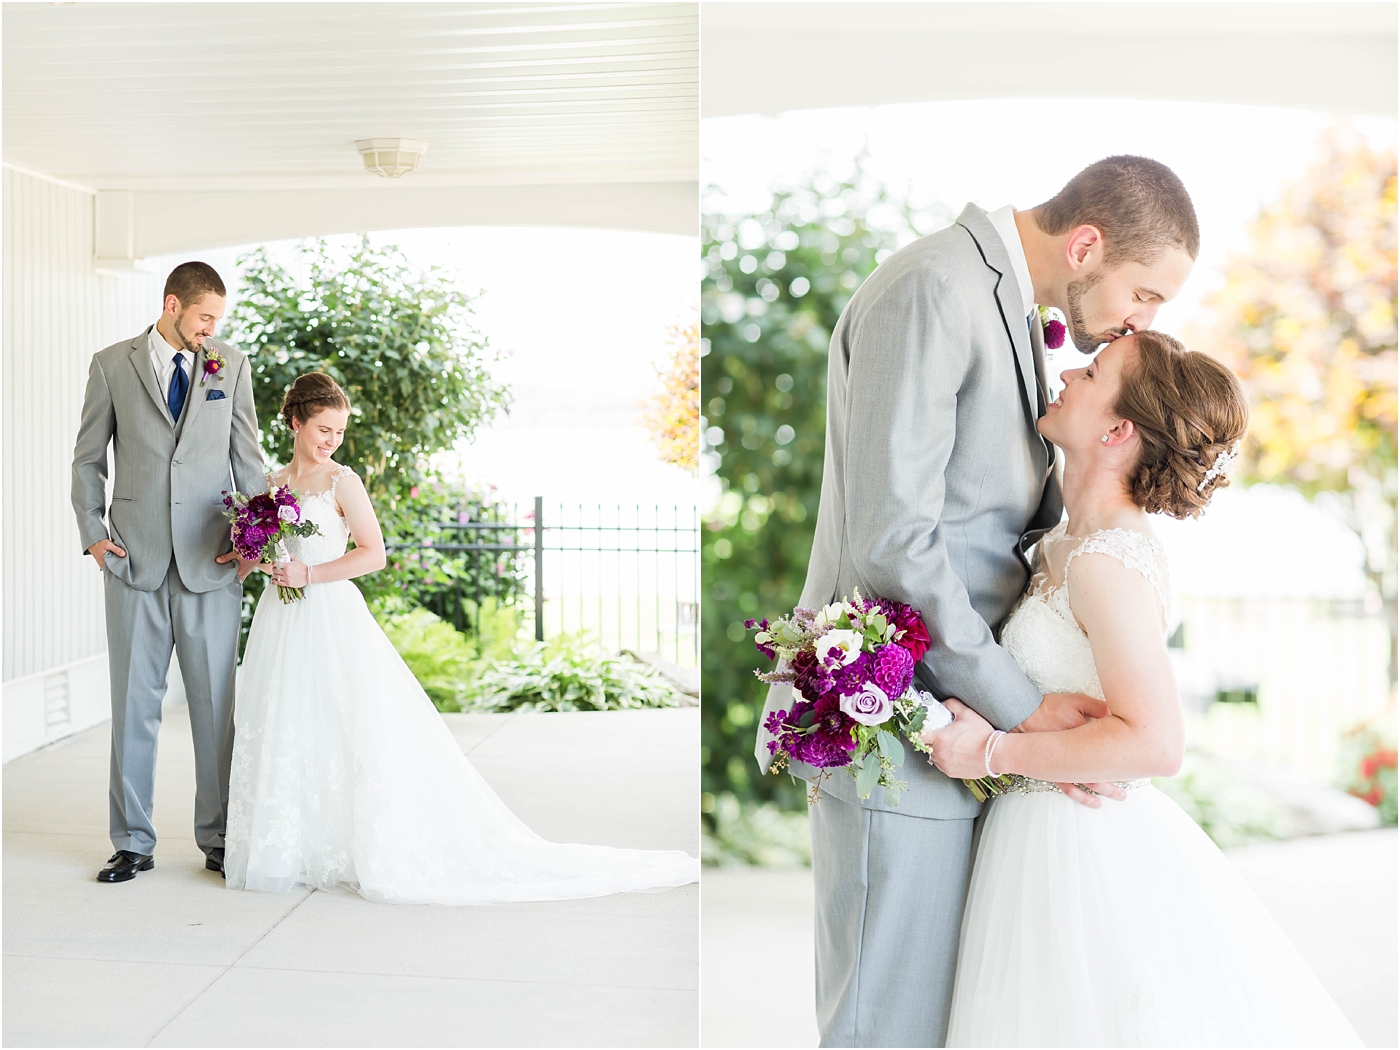 Loren Jackson Photography,Photographer Akron Ohio,cleveland wedding photography,springlake party center wedding,